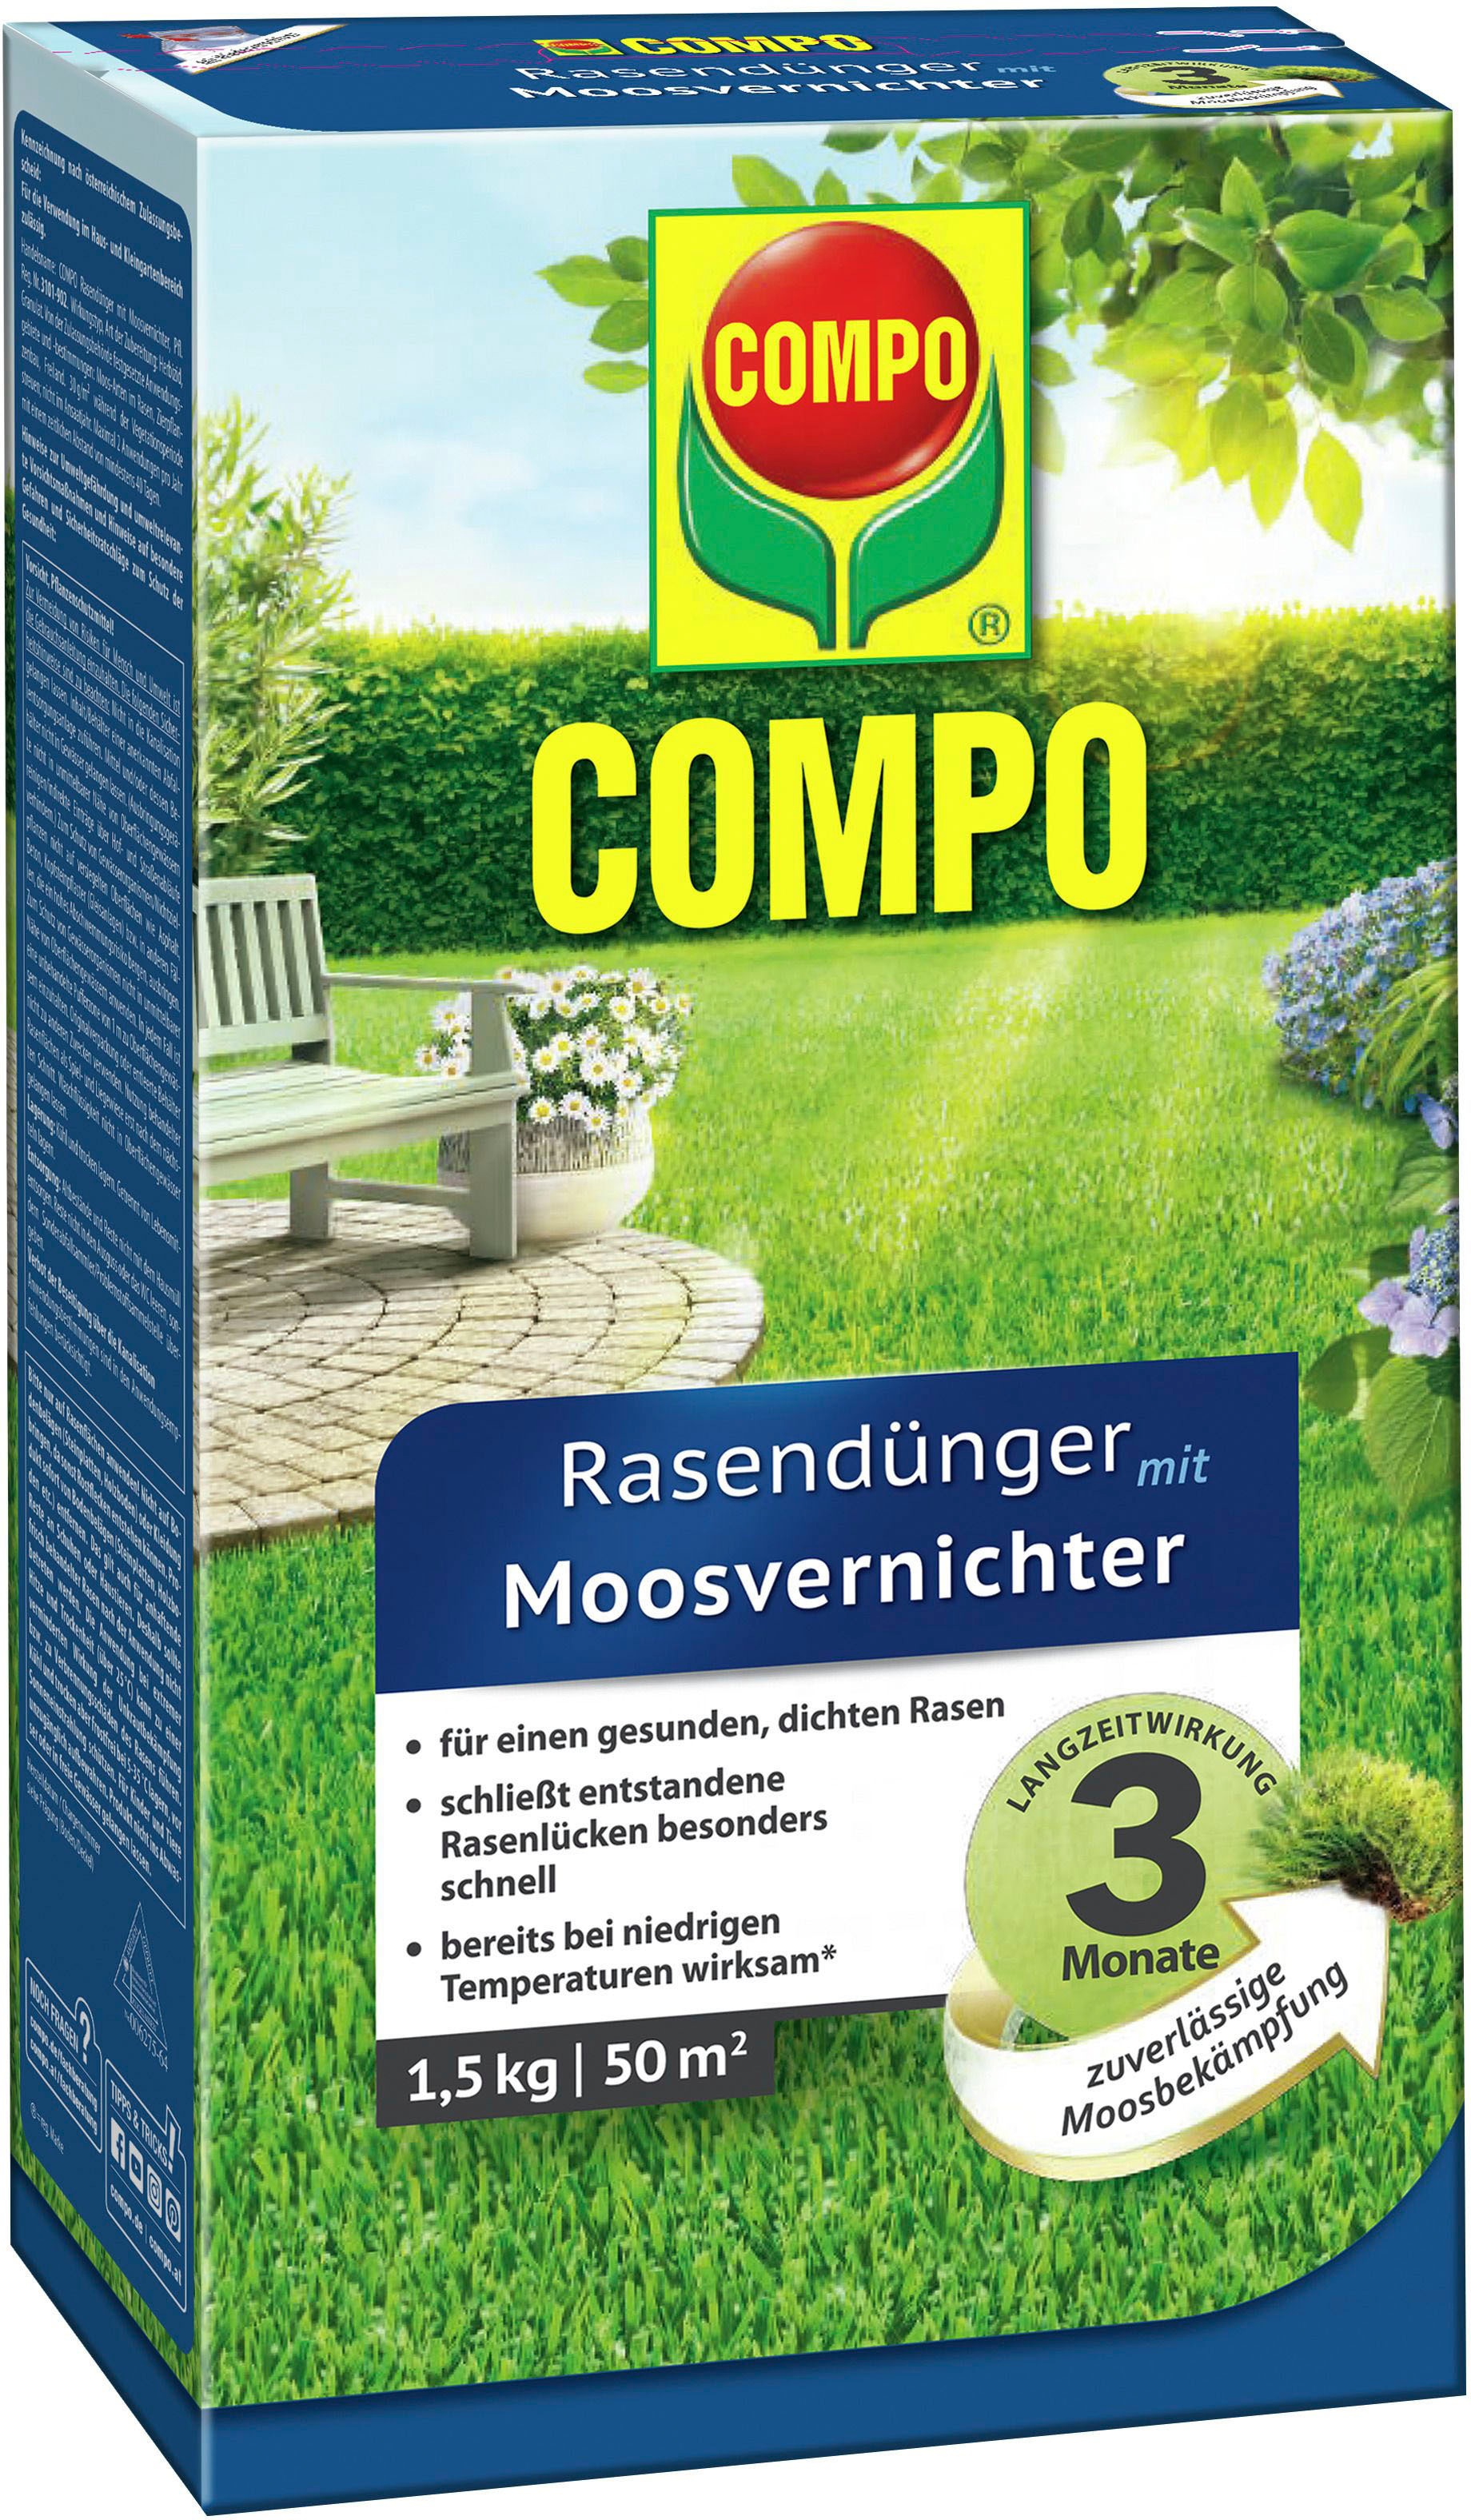 Compo Rasendünger »mit Moosvernichter«, 1,5 kg, für 50 m², 1,5 kg